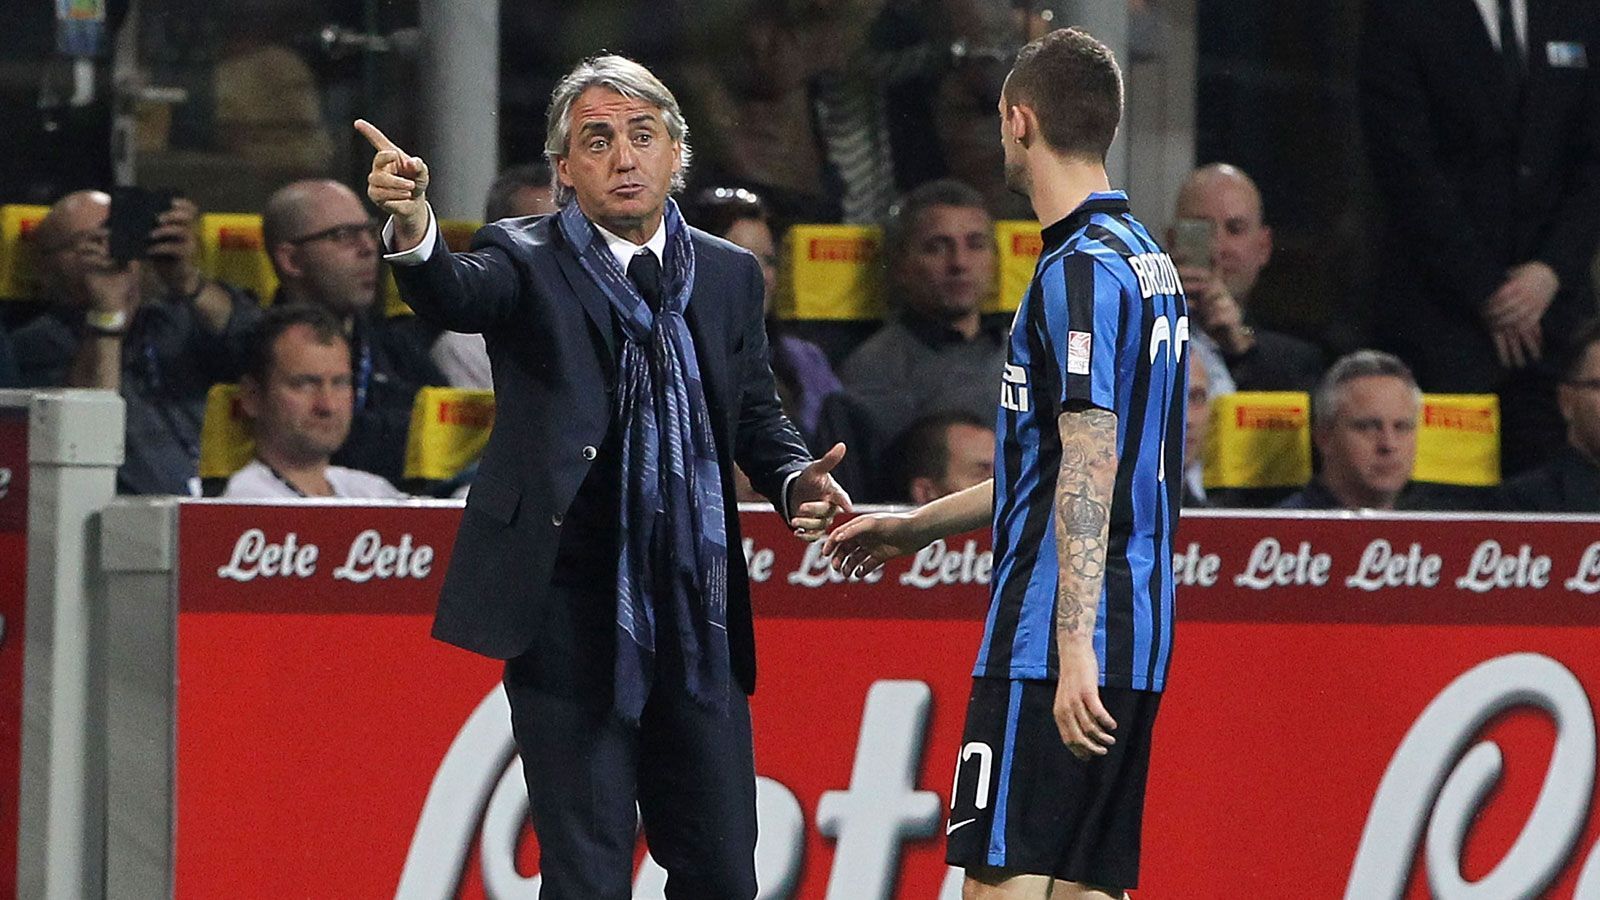 
                <strong>Roberto Mancini (Inter Mailand 2004-08, 2014-16)</strong><br>
                Roberto Mancinis erste Etappe als Trainer von Inter Mailand dauerte vier Jahre. Zweimal (2005/06, 2006/07) gewannen die "Nerazzurri" die italienische Meisterschaft. 2005/06 allerdings erst am grünen Tisch. Nachdem Juventus Turin und der AC Milan wegen Manipulationsvorwürfen disqualifiziert worden waren, wurde Inter nachträglich zum Meister gekürt. 2008 trat Mancini nach Differenzen mit Spielern und Beratern zunächst zurück, nahm seine Entscheidung kurz darauf aber wieder zurück. Zuviel für die Vereinsoberen, Mancini wurde kurzerhand entlassen. Als er 2014-16 nach Mailand zurückkehrte, konnte er nicht mehr an alte Erfolge anknüpfen.
              